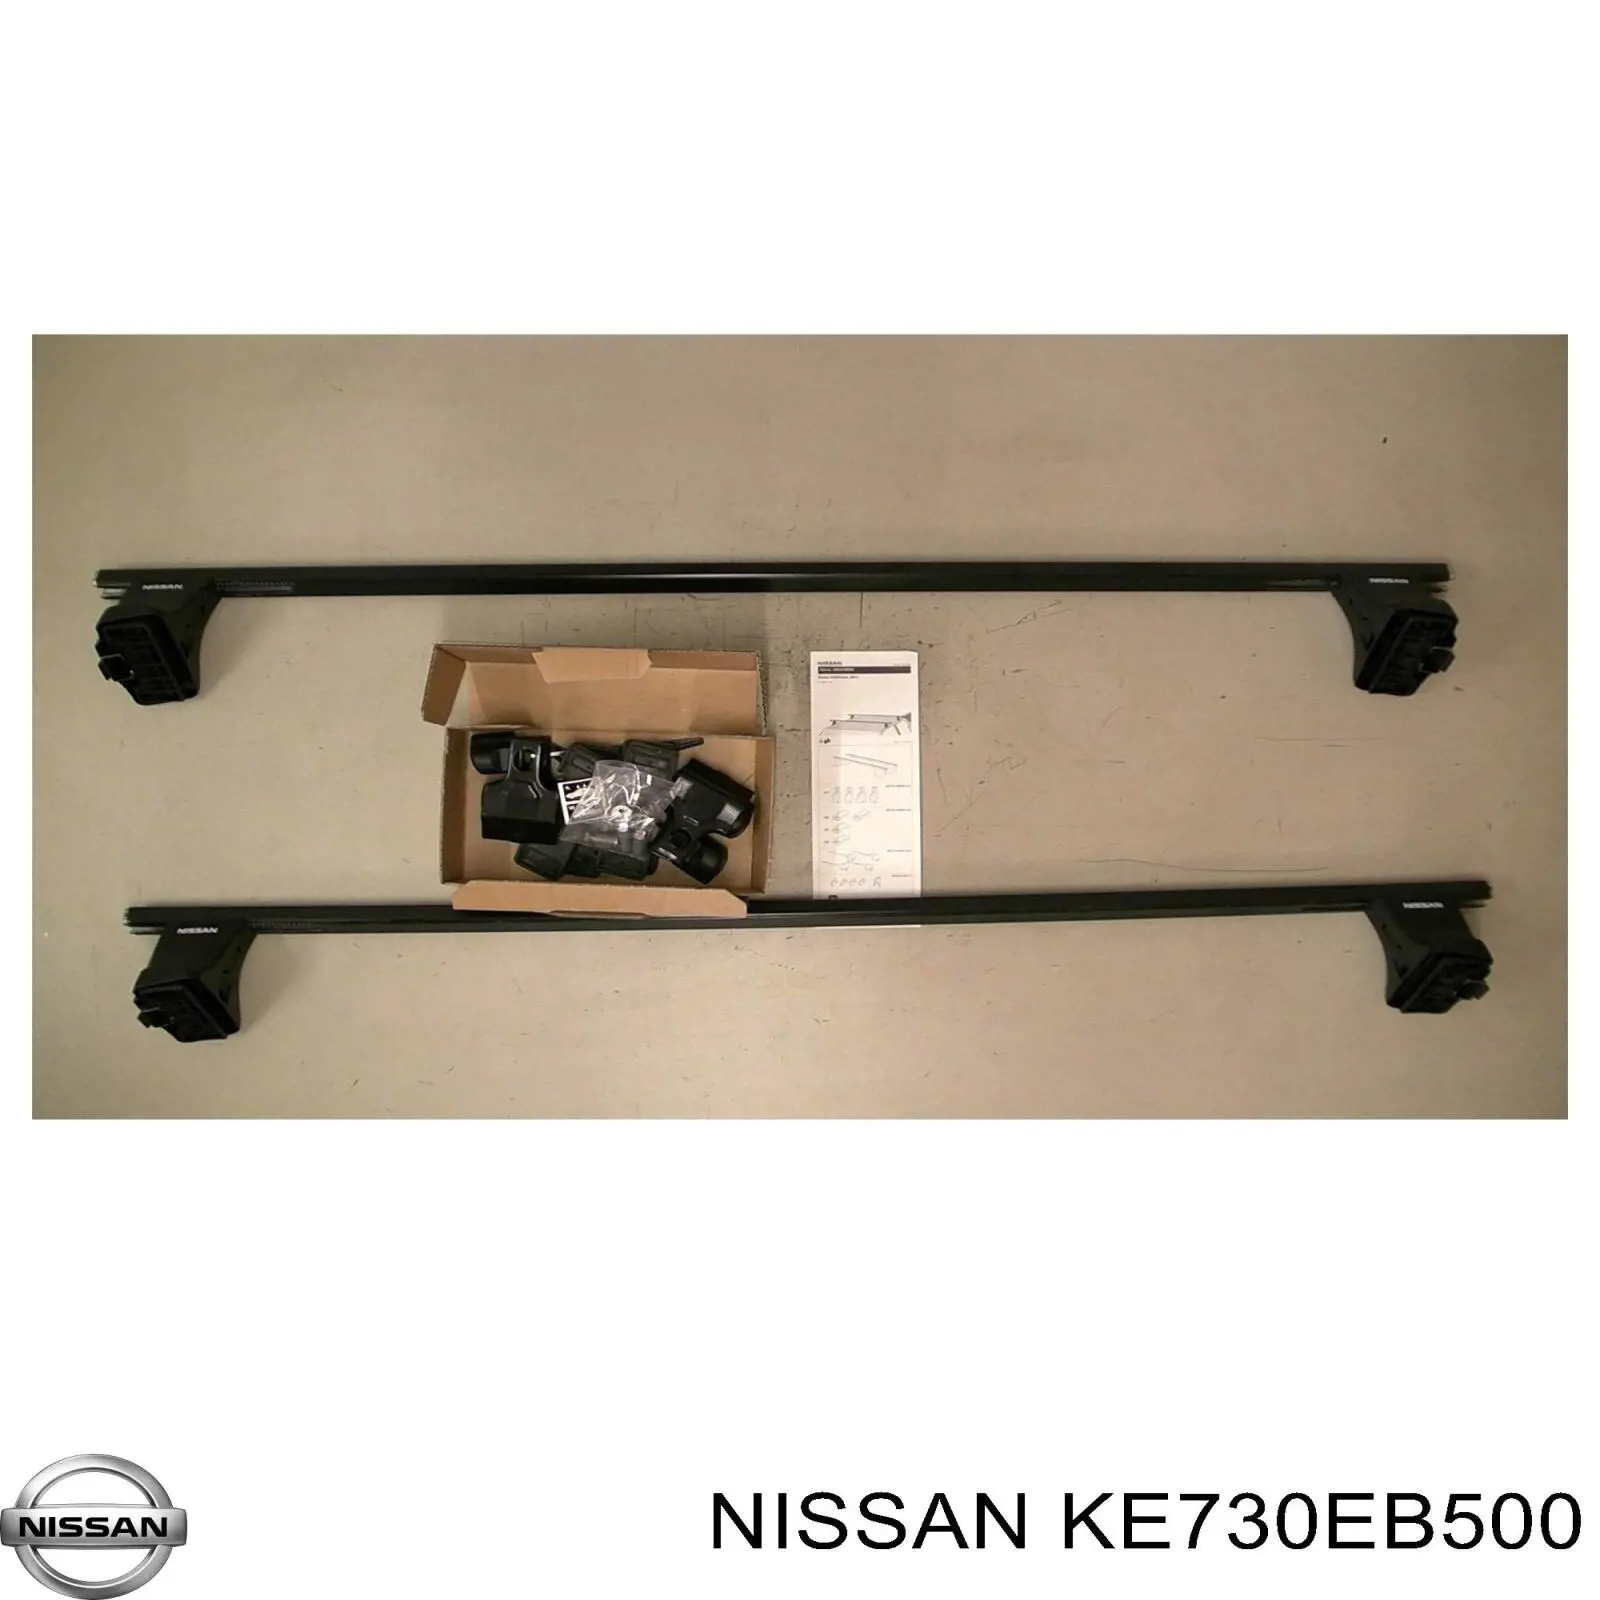 KE730EB500 Nissan багажник крыши